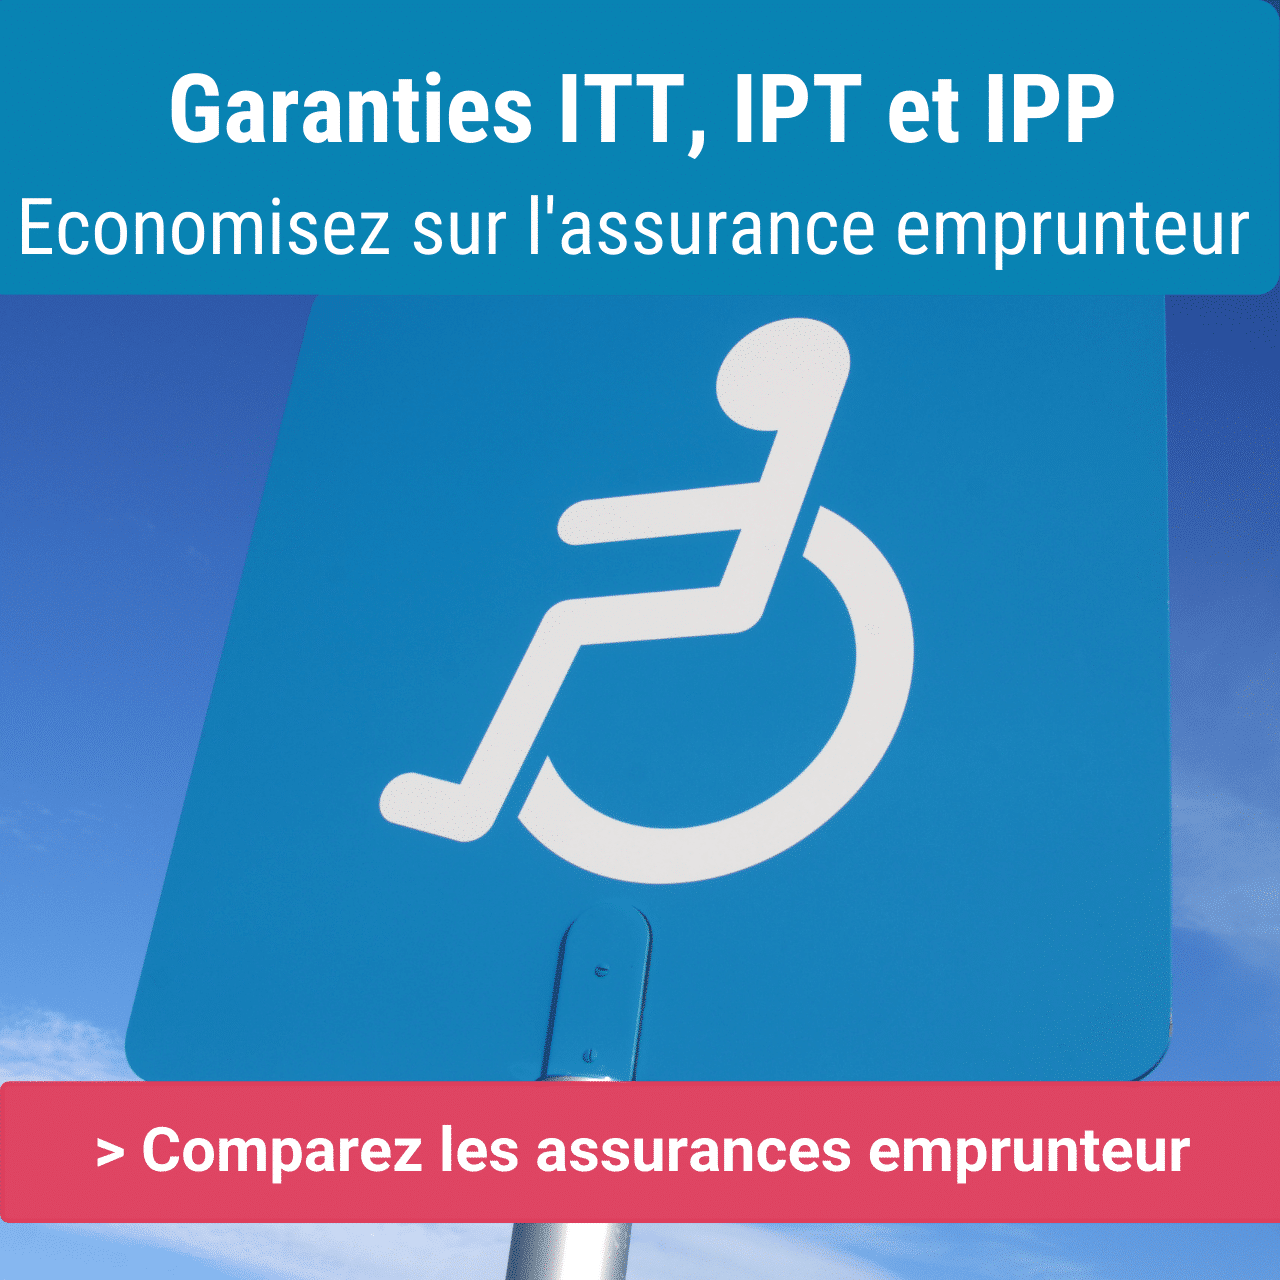 définition garanties ITT IPT et IPP